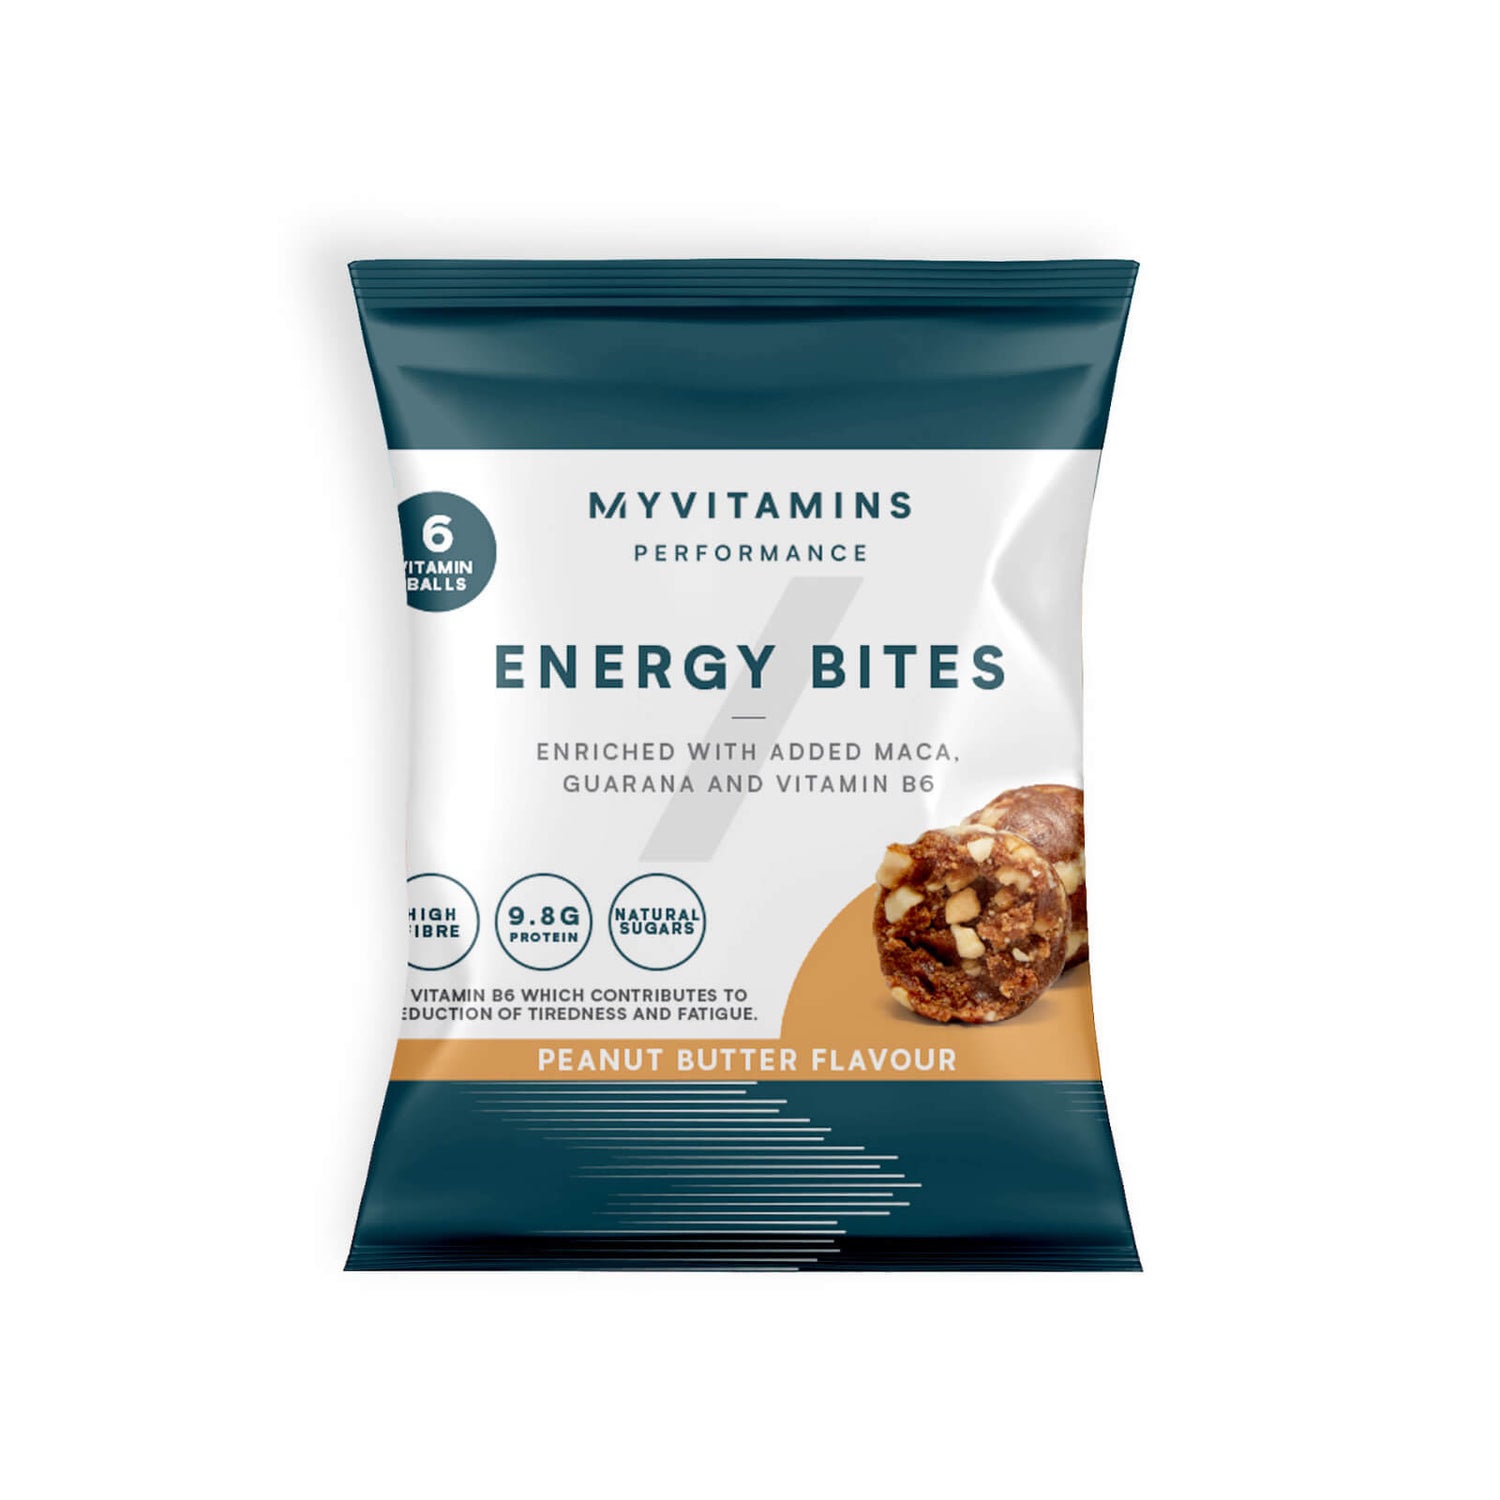 Energy Bites - Burro di arachidi